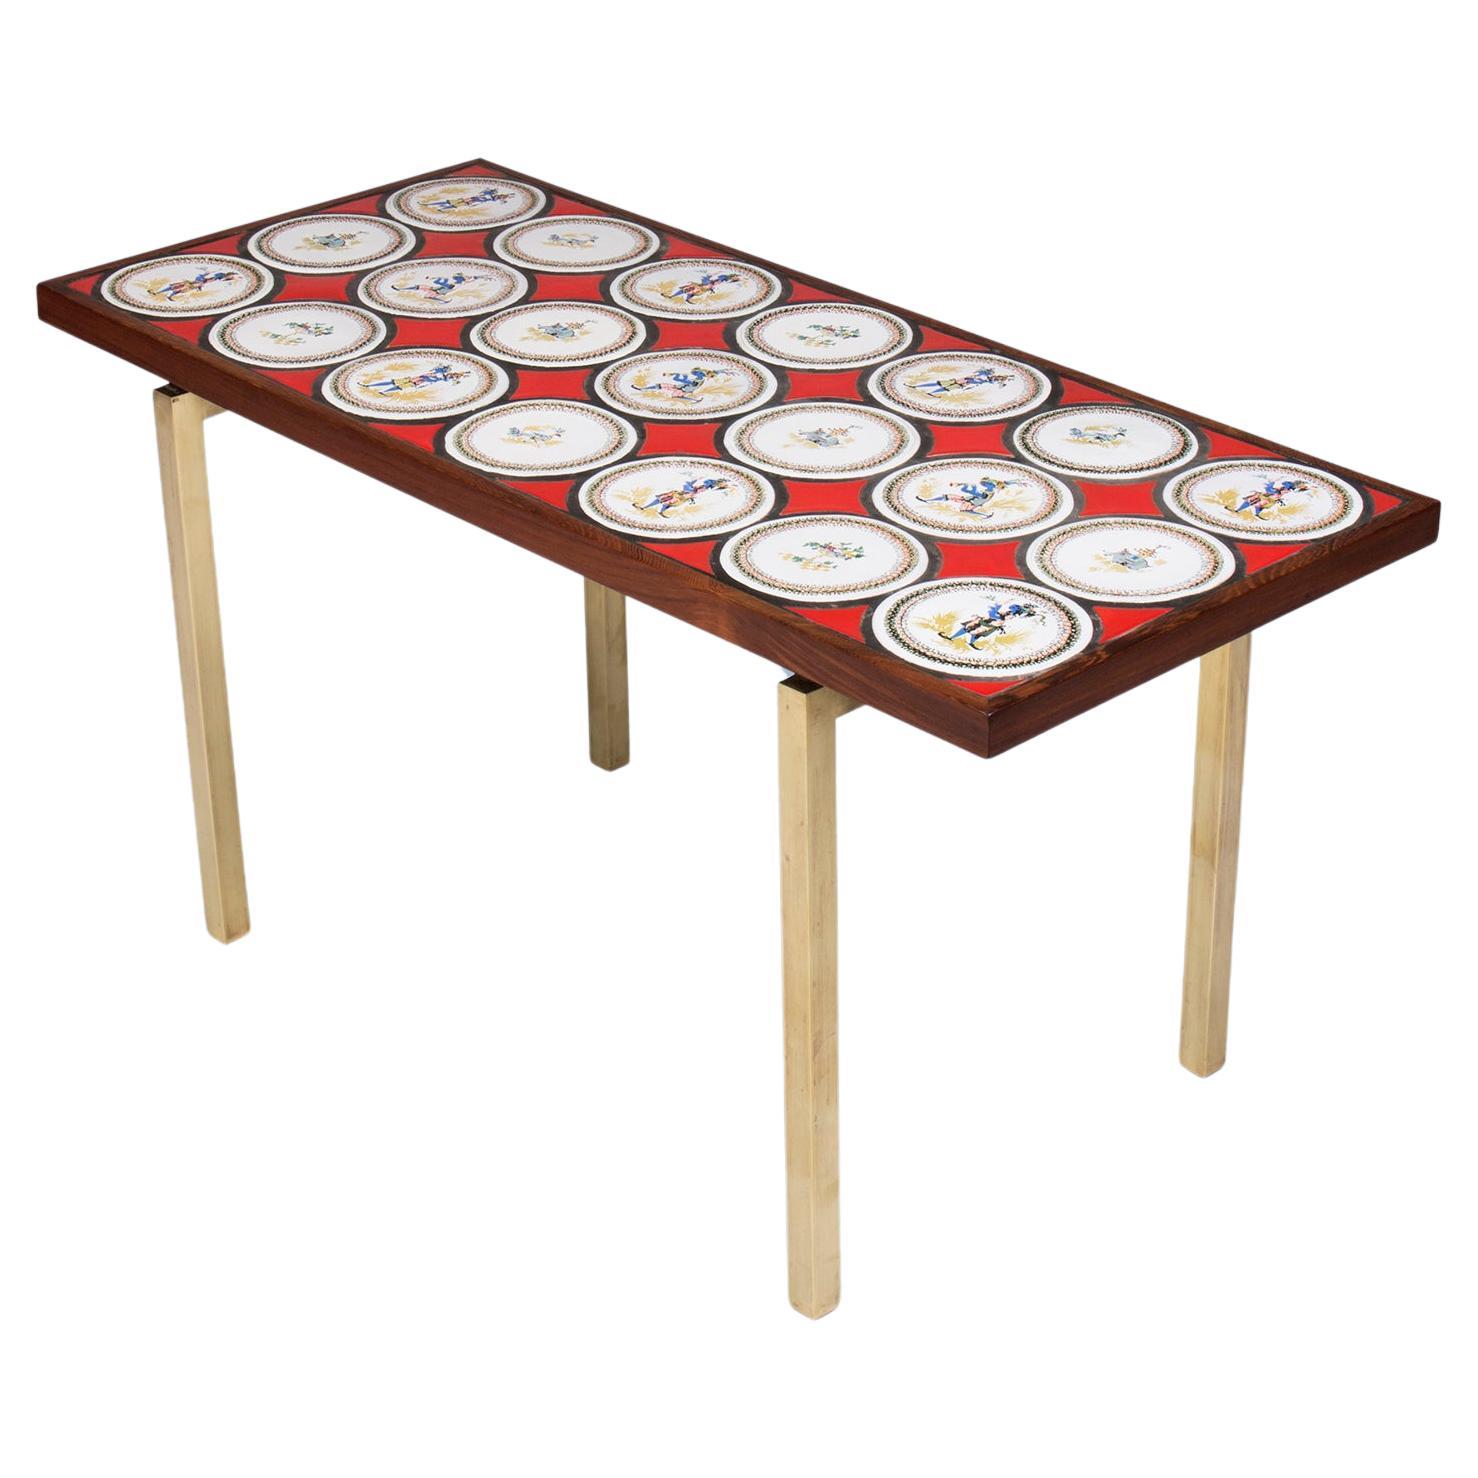 Table basse danoise moderne avec carreaux de bleu rouge, nuances blanches et pieds en bronze